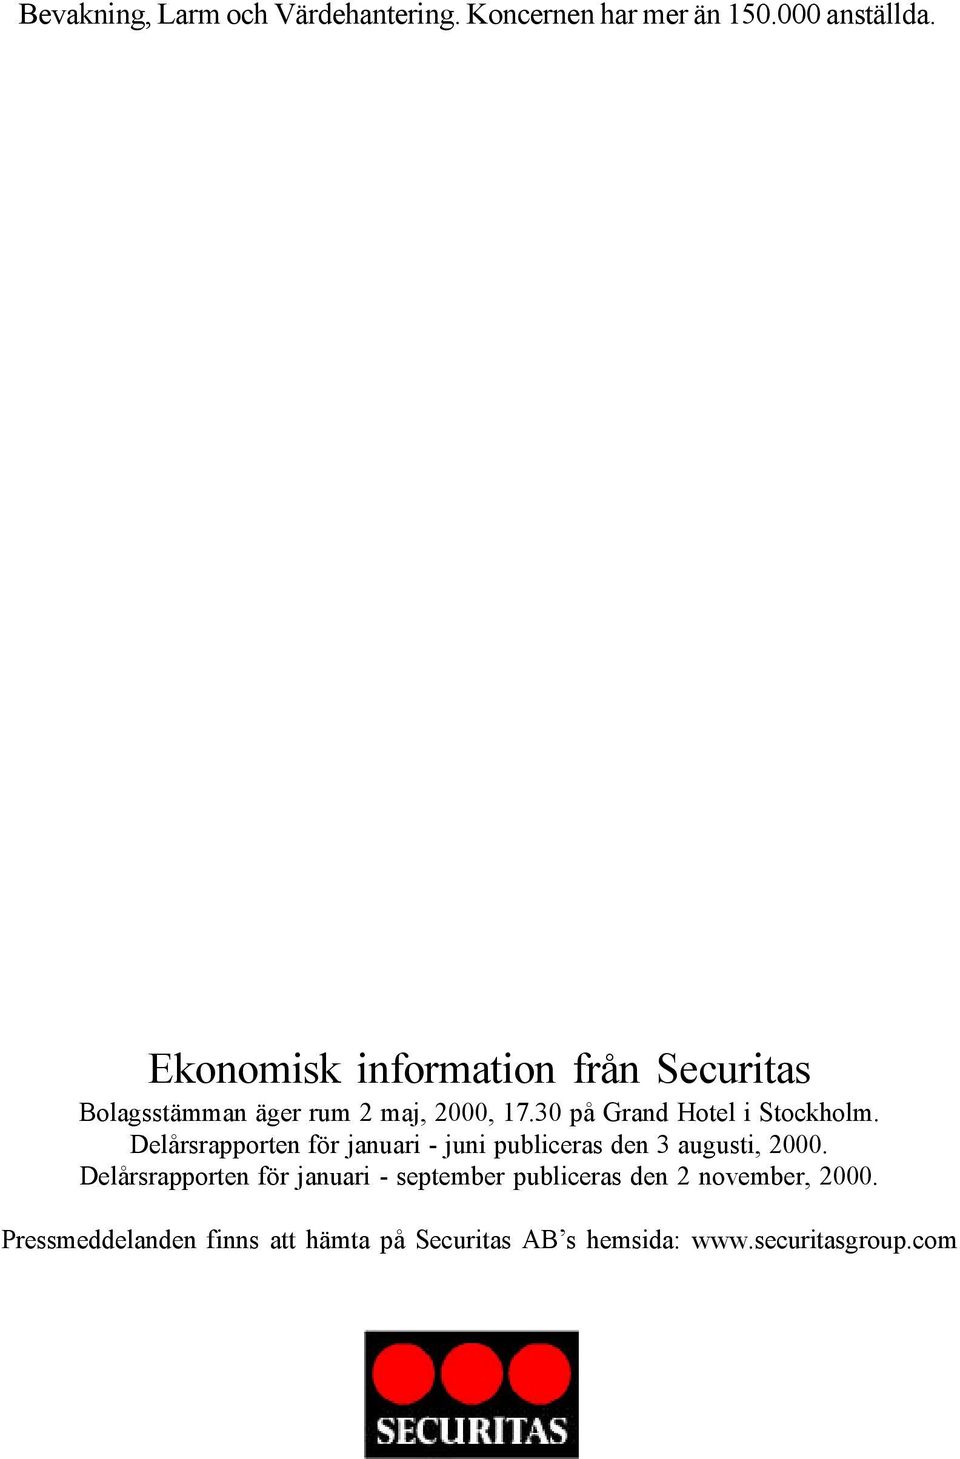 30 på Grand Hotel i Stockholm. Delårsrapporten för januari - juni publiceras den 3 augusti, 2000.